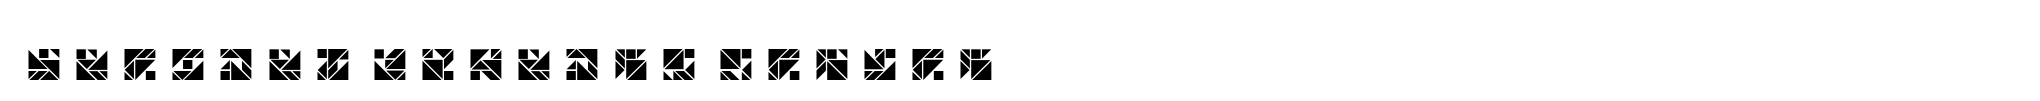 Tangram Squares Inline image